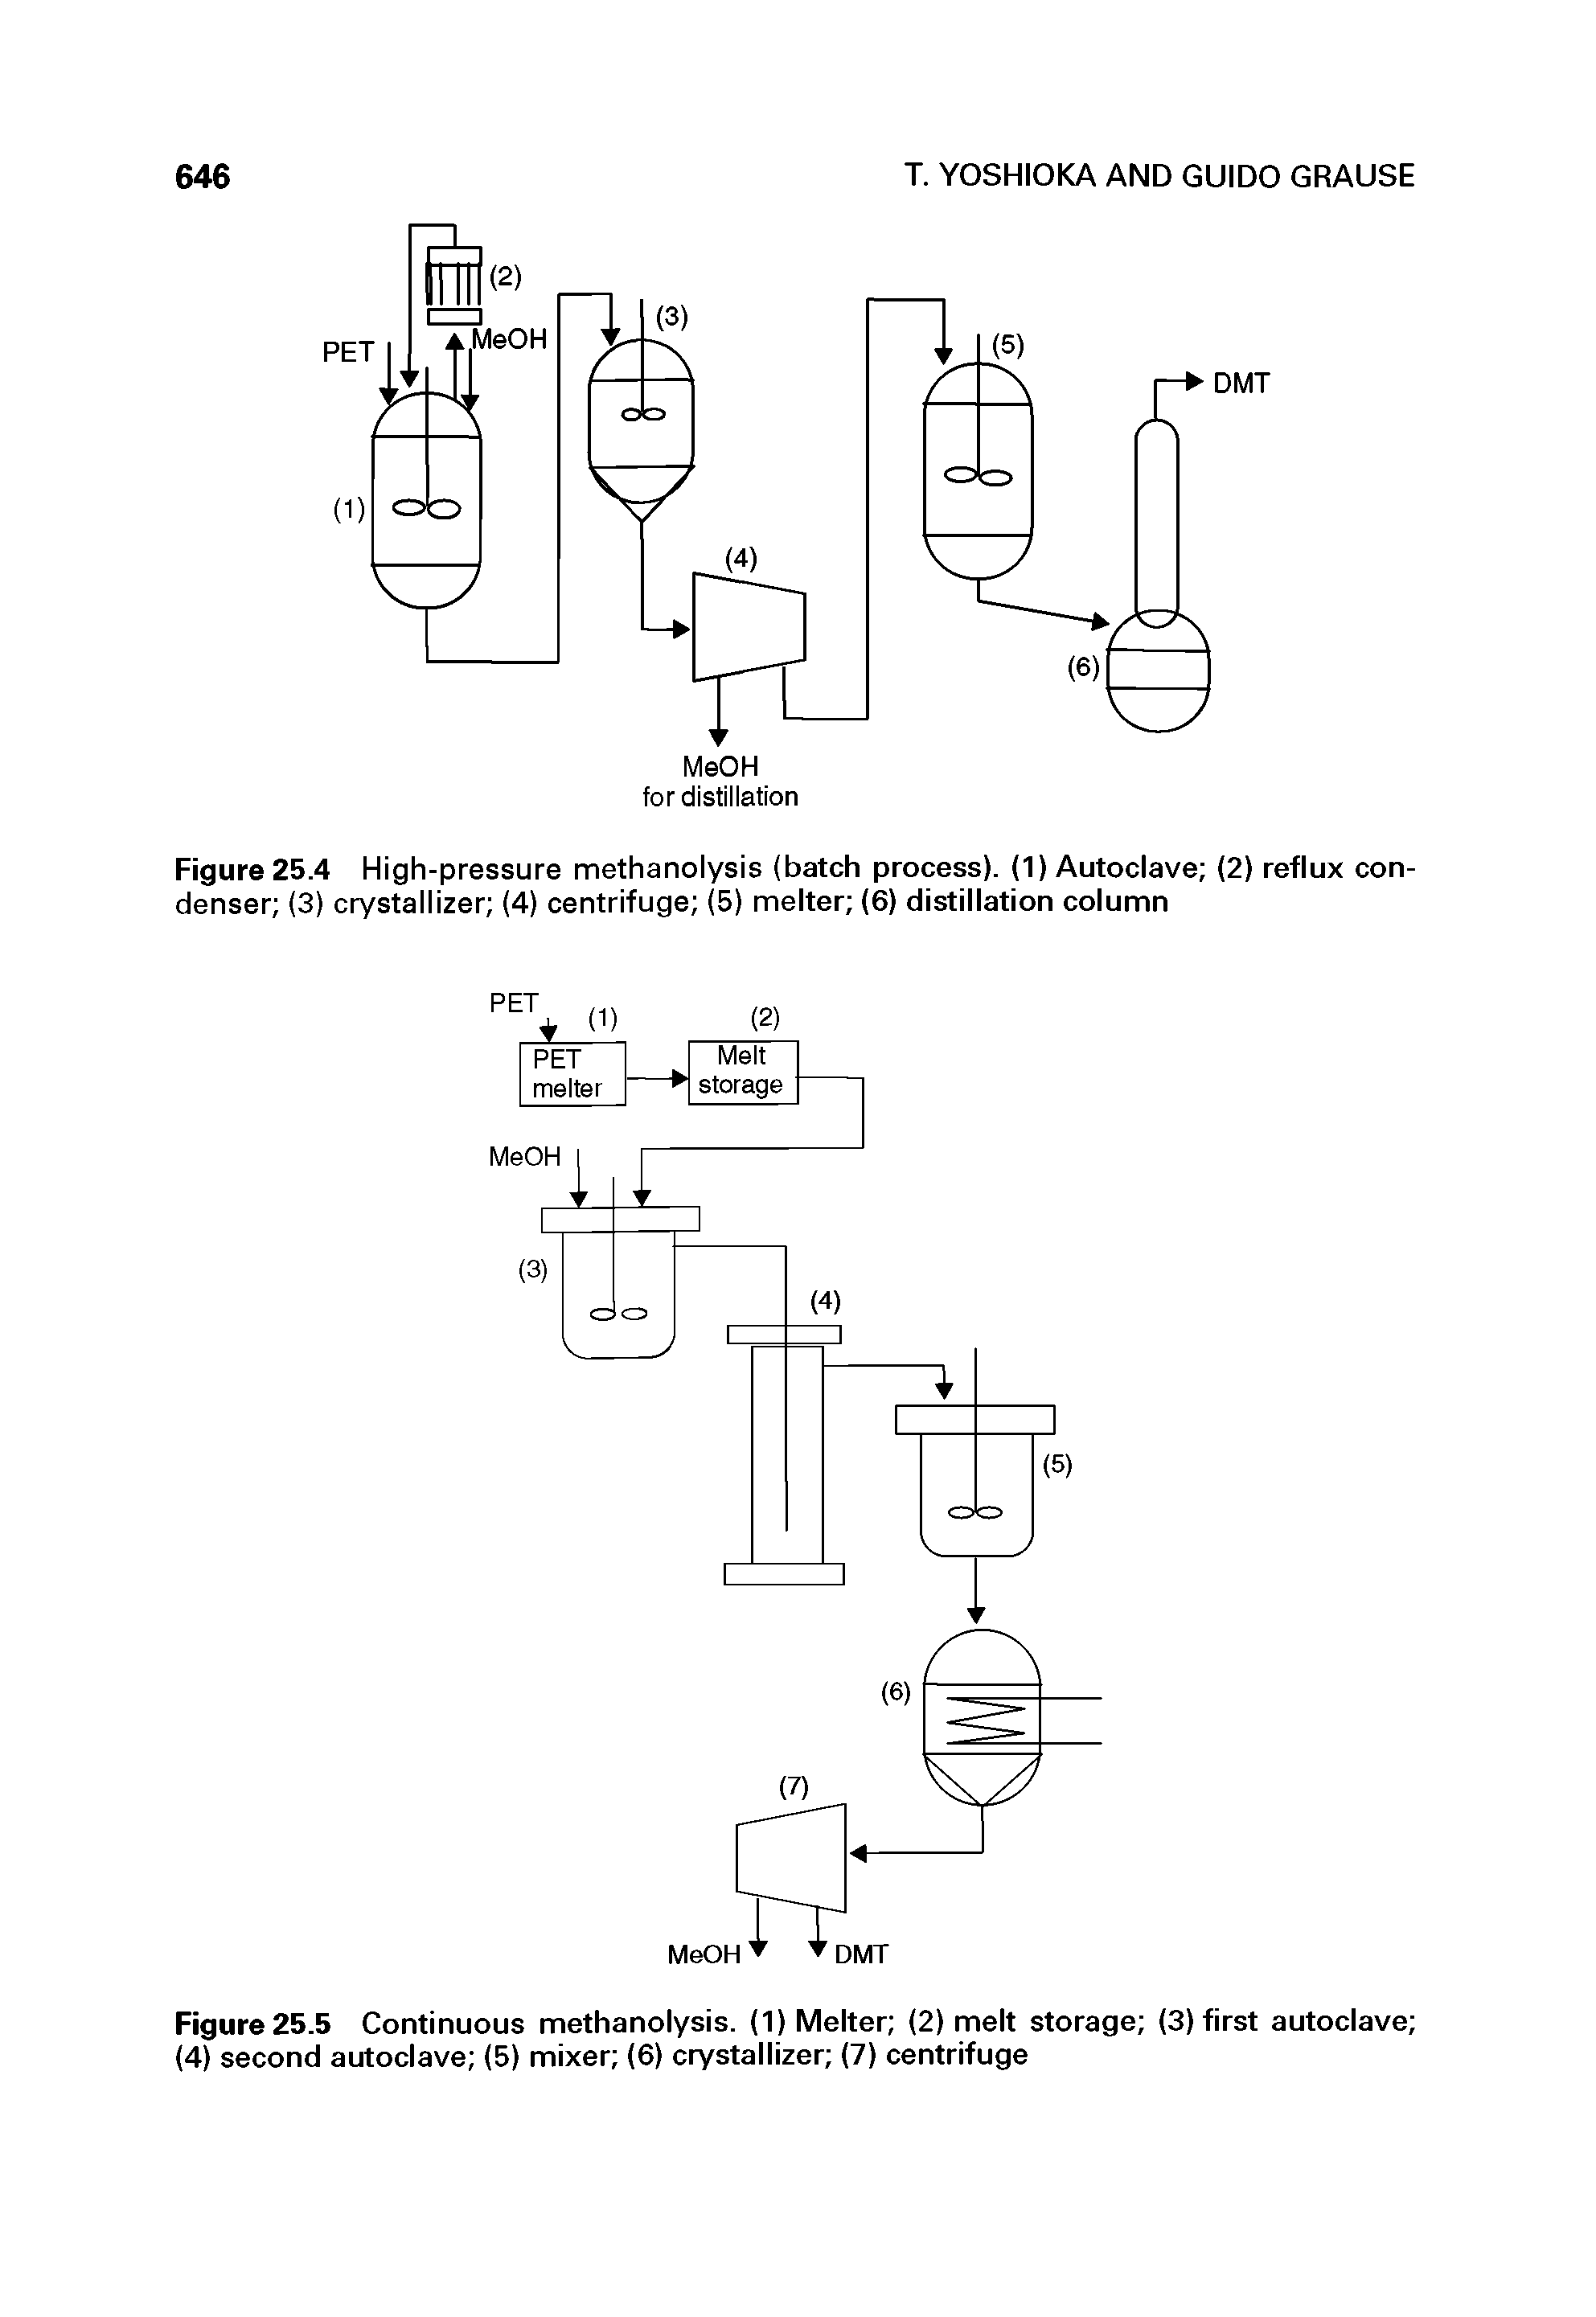 Figure 25.4 High-pressure methanolysis (batch process). (1) Autoclave (2) reflux condenser (3) crystallizer (4) centrifuge (5) melter (6) distillation column...